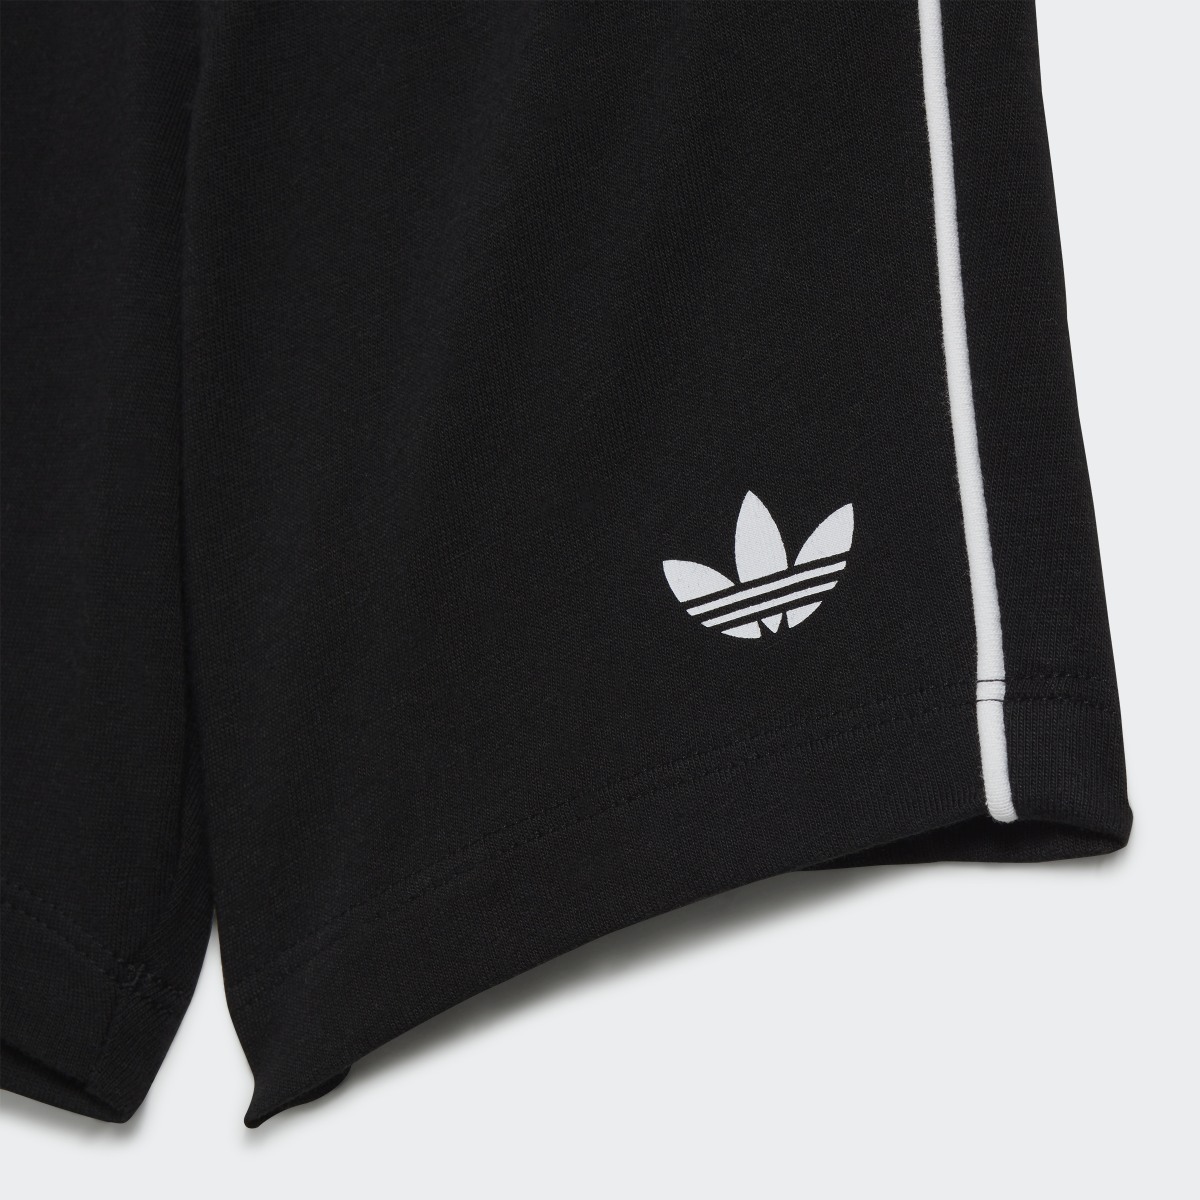 Adidas Adicolor Shorts and Tee Set. 8